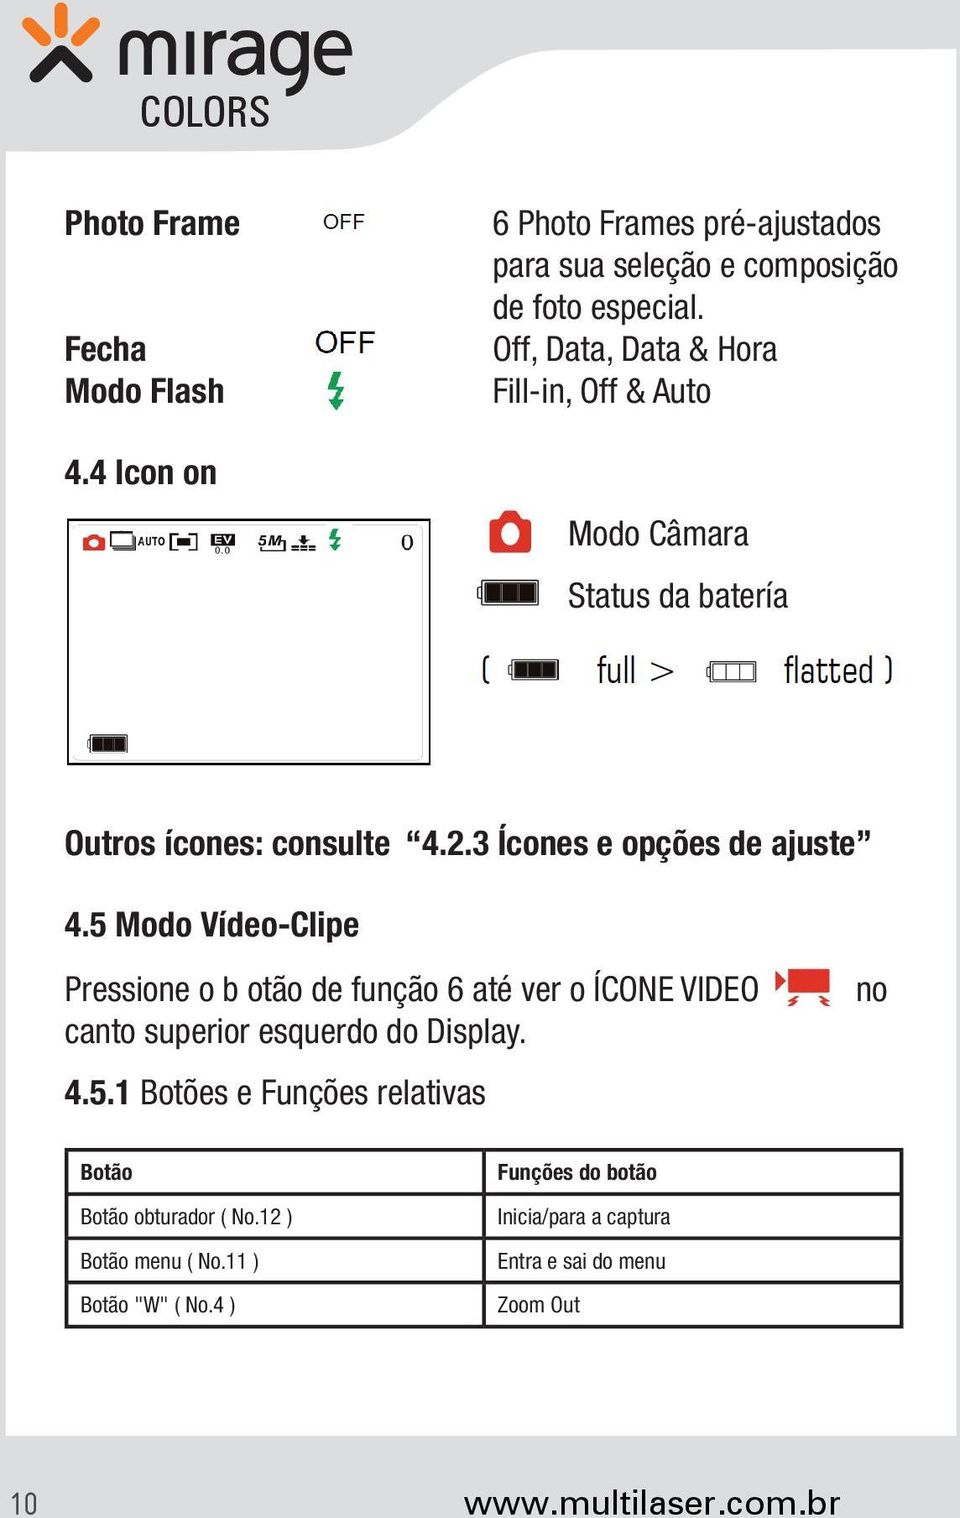 5 Modo Vídeo-Clipe Pressione o b otão de função 6 até ver o ÍCONE VIDEO canto superior esquerdo do Display. 4.5.1 Botões e Funções relativas no Botão Botão obturador ( No.